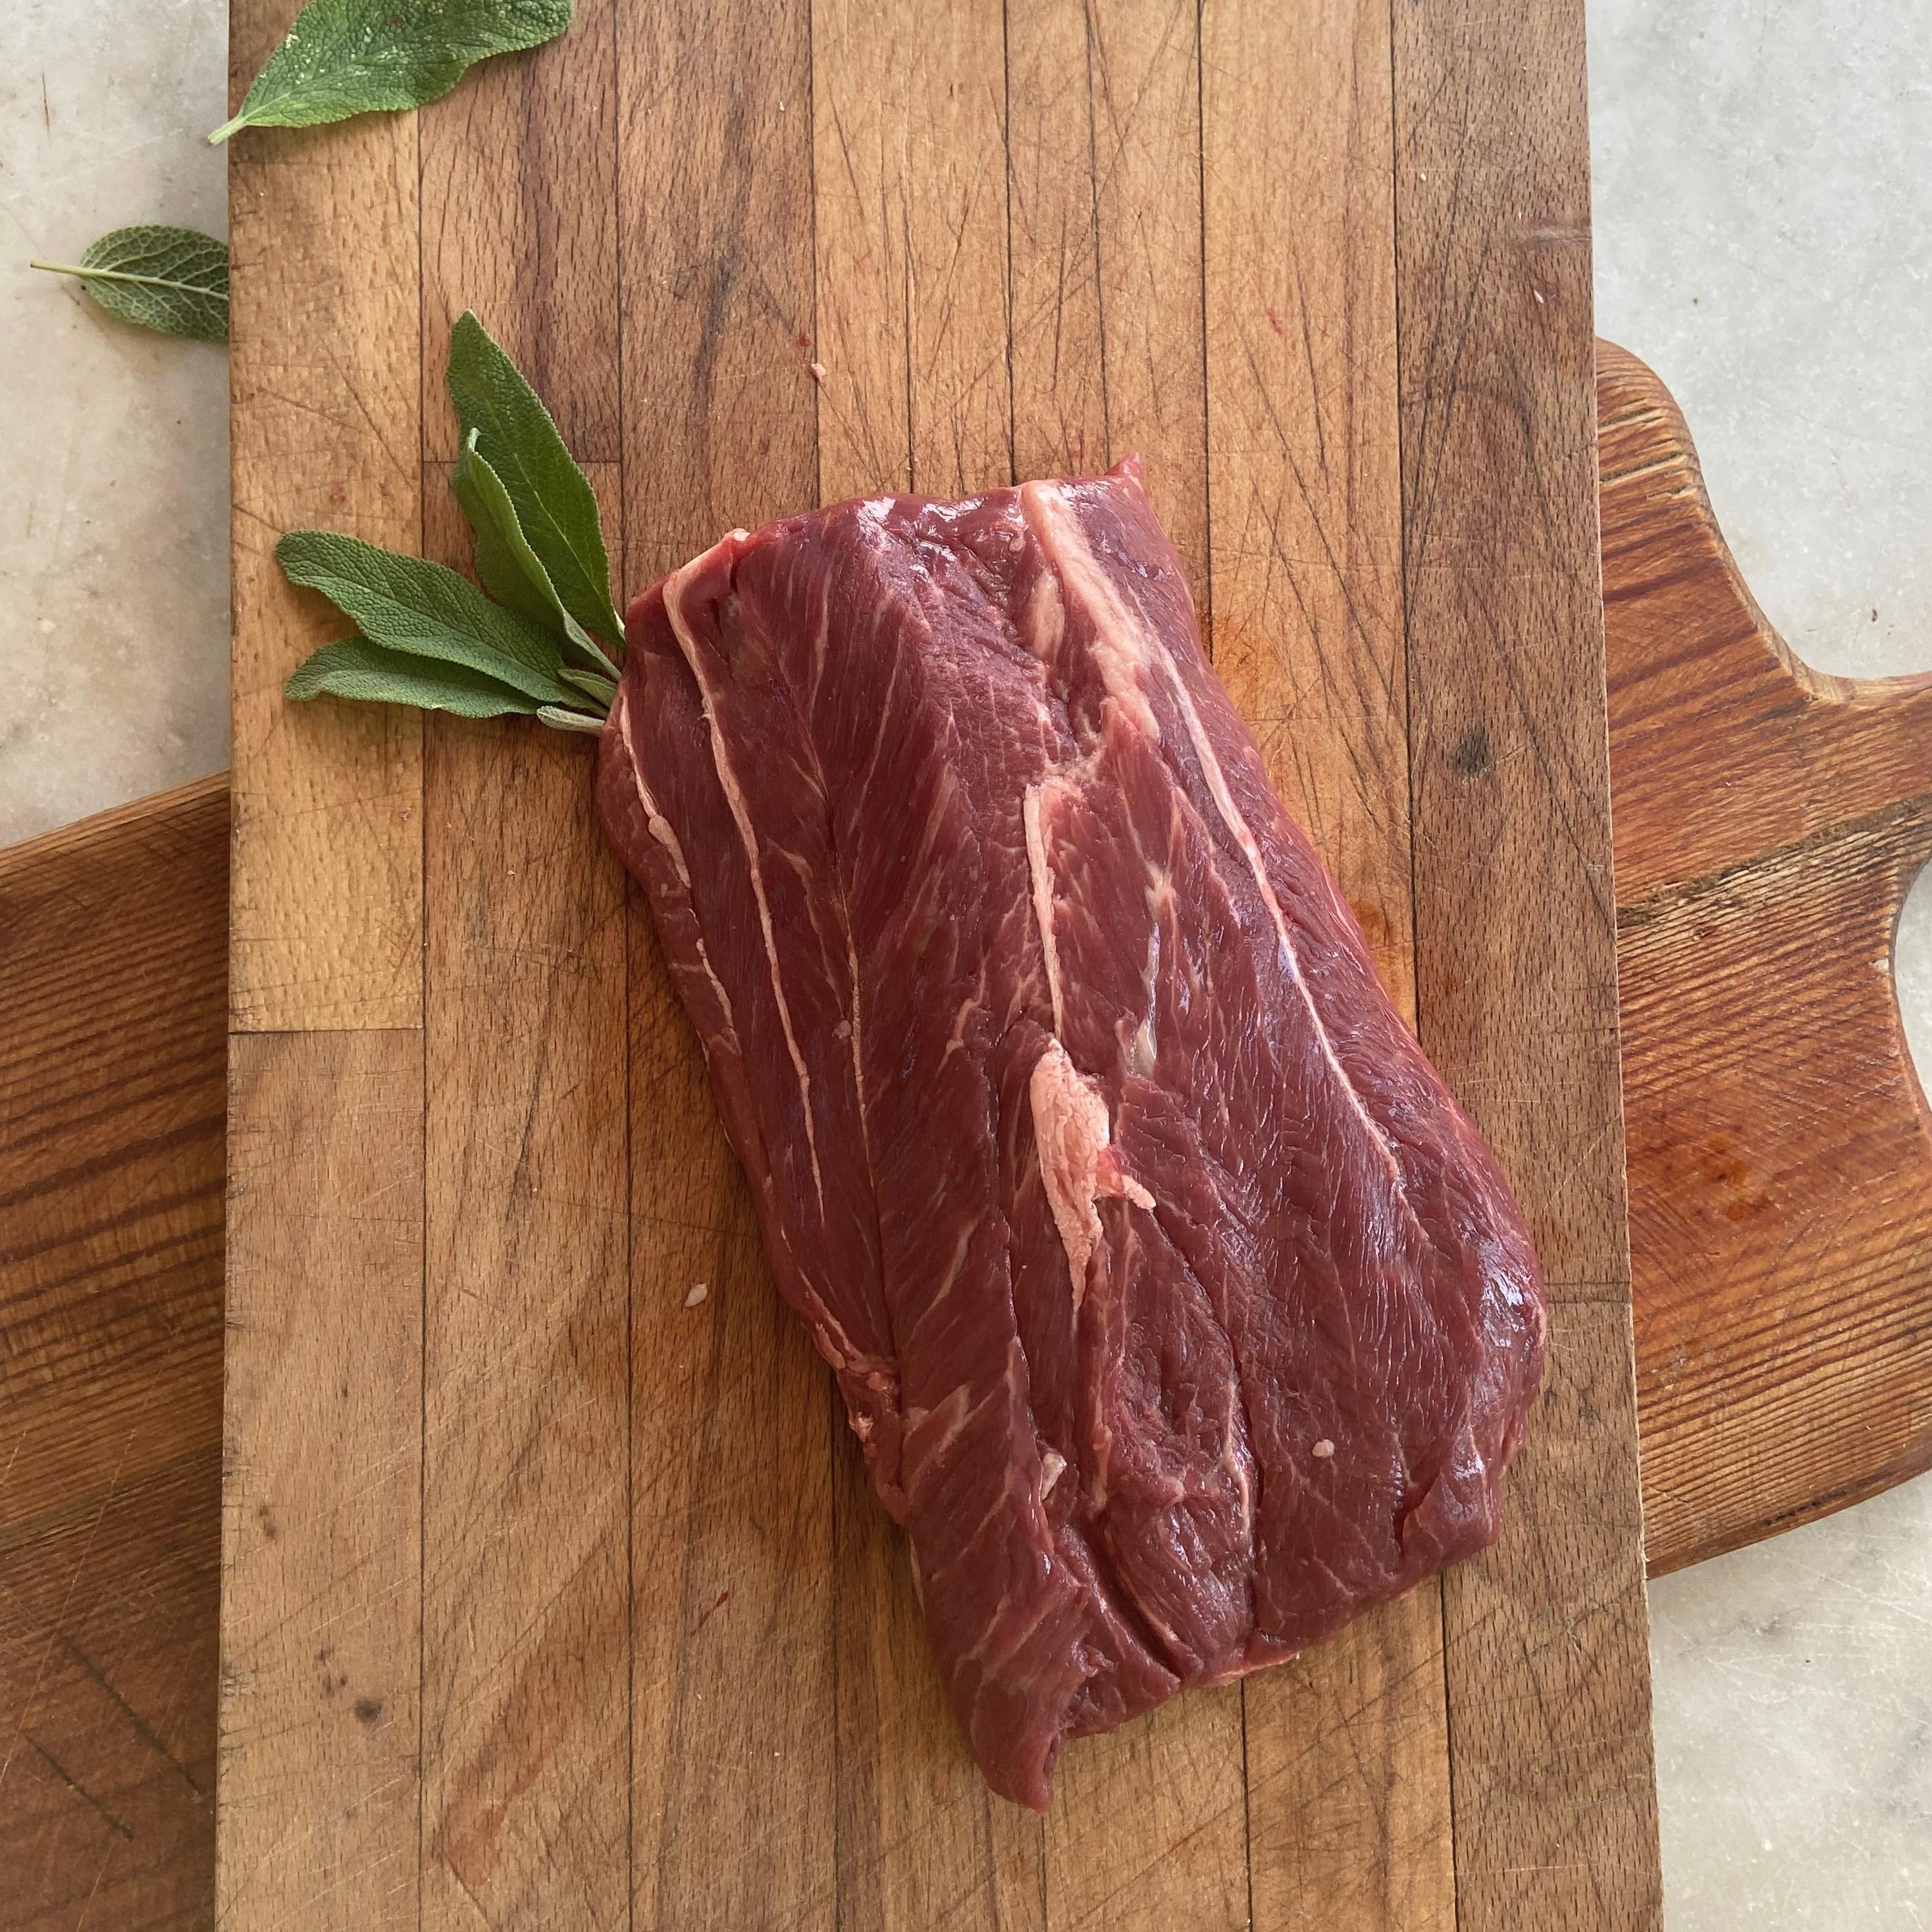 100% grass fed skirt steak, made from Longhorn beef